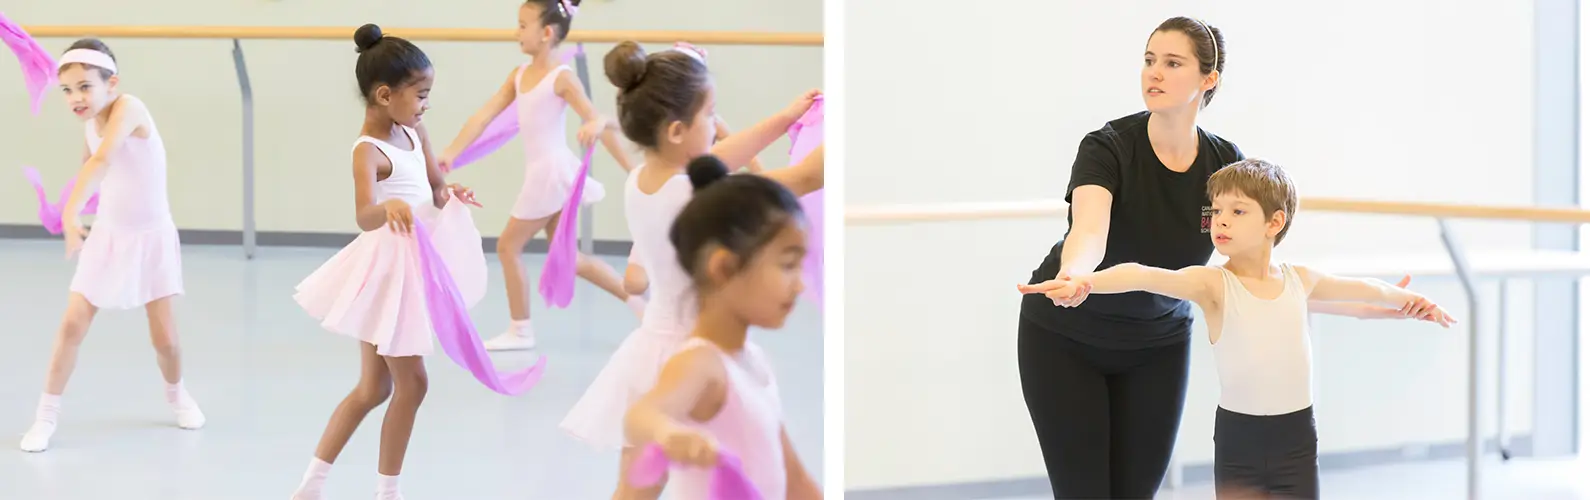 De jeunes danseur·euse·s participent à des cours de ballet